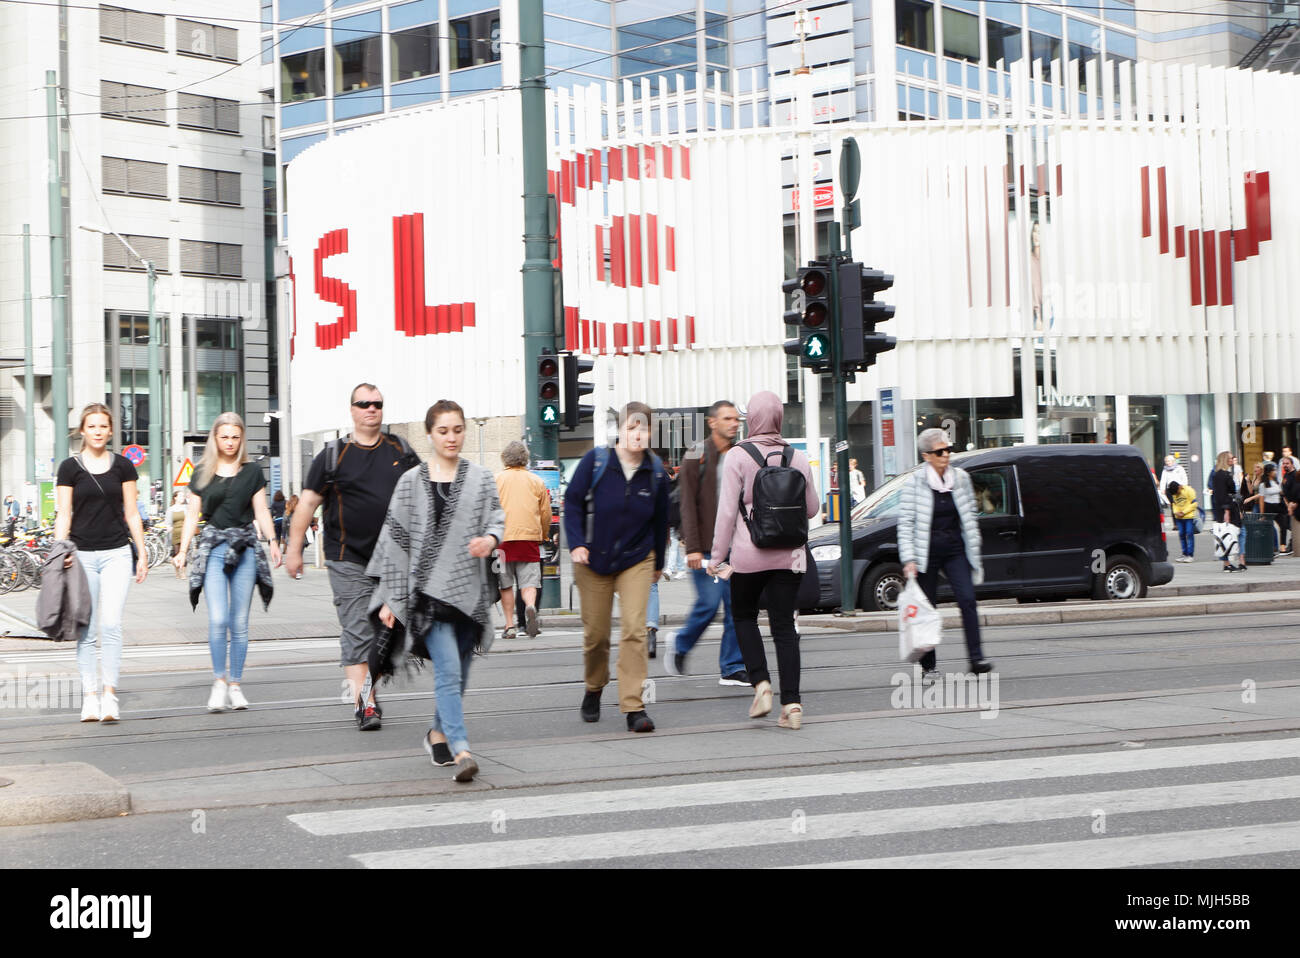 Oslo, Norwegen - 16 September 2016: Menschen überqueren die Straße auf dem Zebrastreifen außerhalb von Oslo City Shopping Centre im Hintergrund zu sehen. Stockfoto